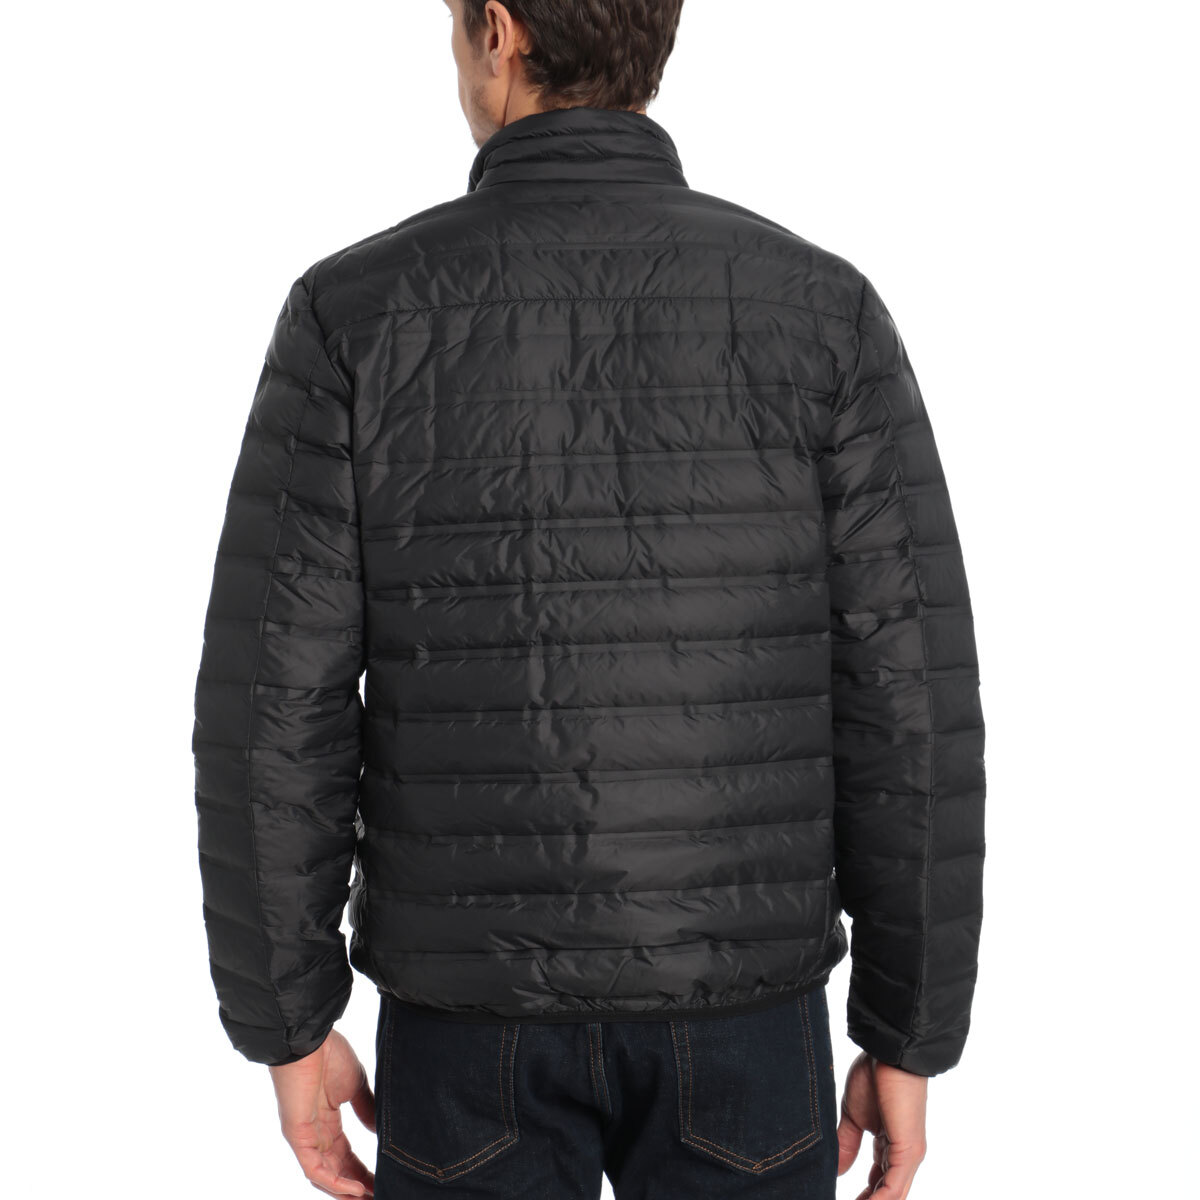 Gerry Men's Replay Sweater Down Jacket in Black | Costco UK